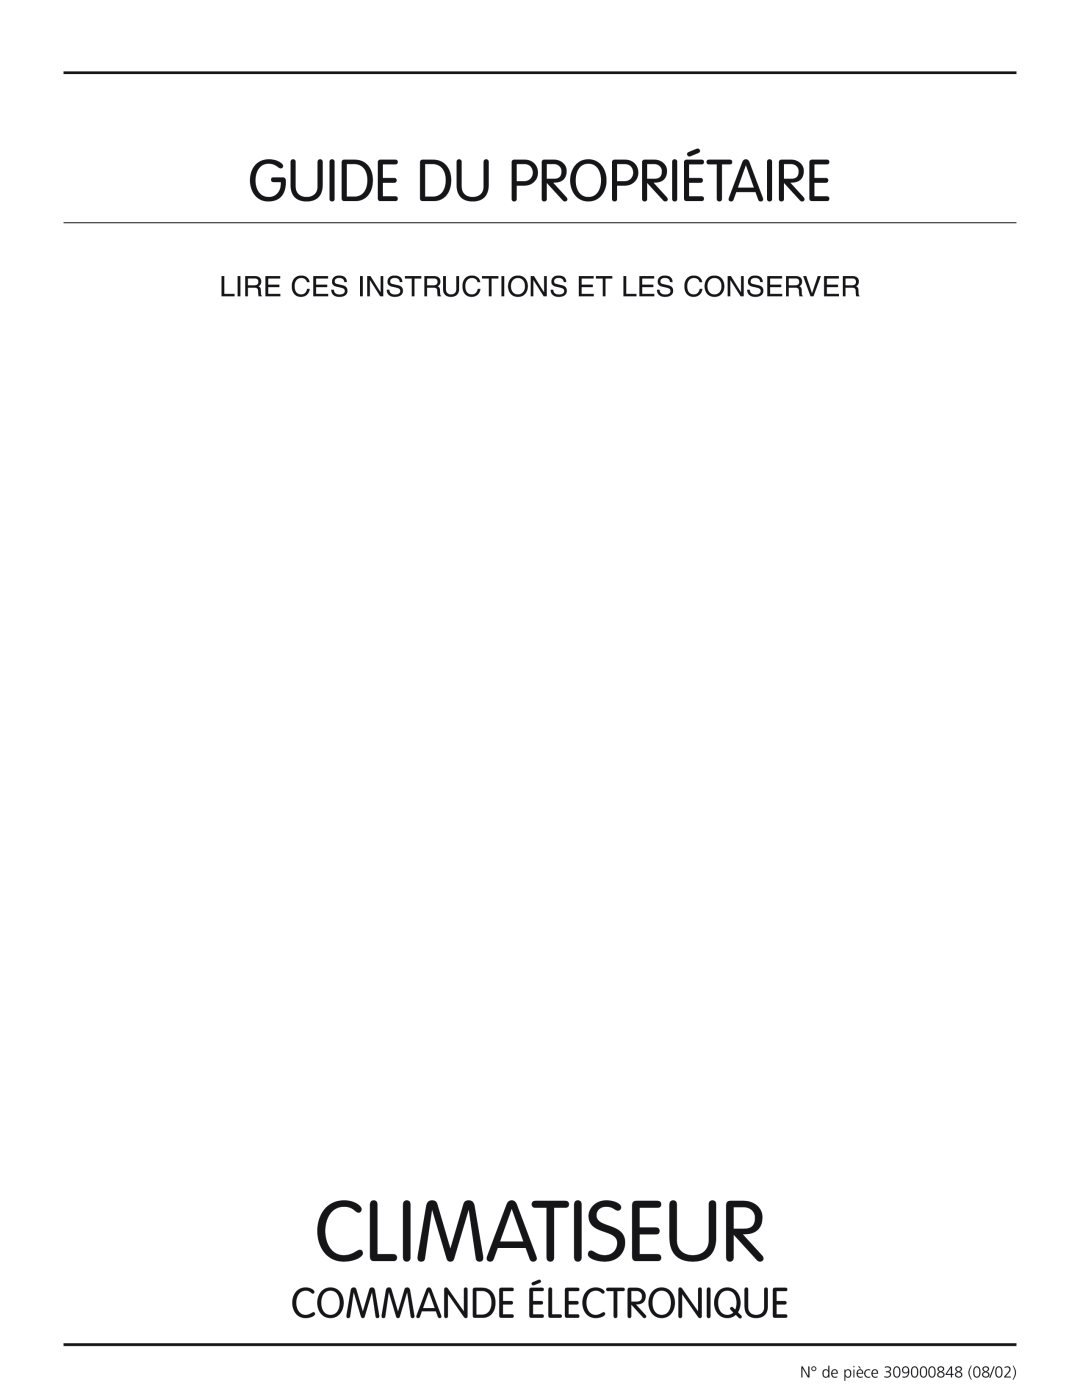 Frigidaire 309000848 Climatiseur, Guide Du Propriétaire, Commande Électronique, Lire Ces Instructions Et Les Conserver 